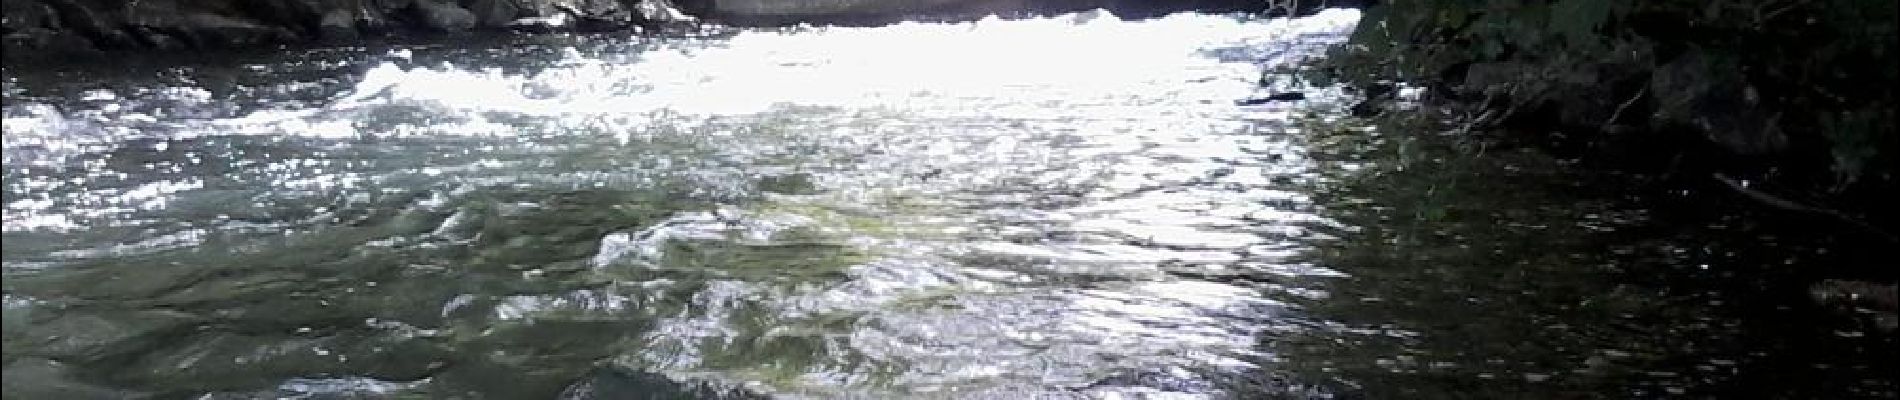 Randonnée Canoë - kayak Rhinau - Canoé-brunnwasser en canoé - Photo